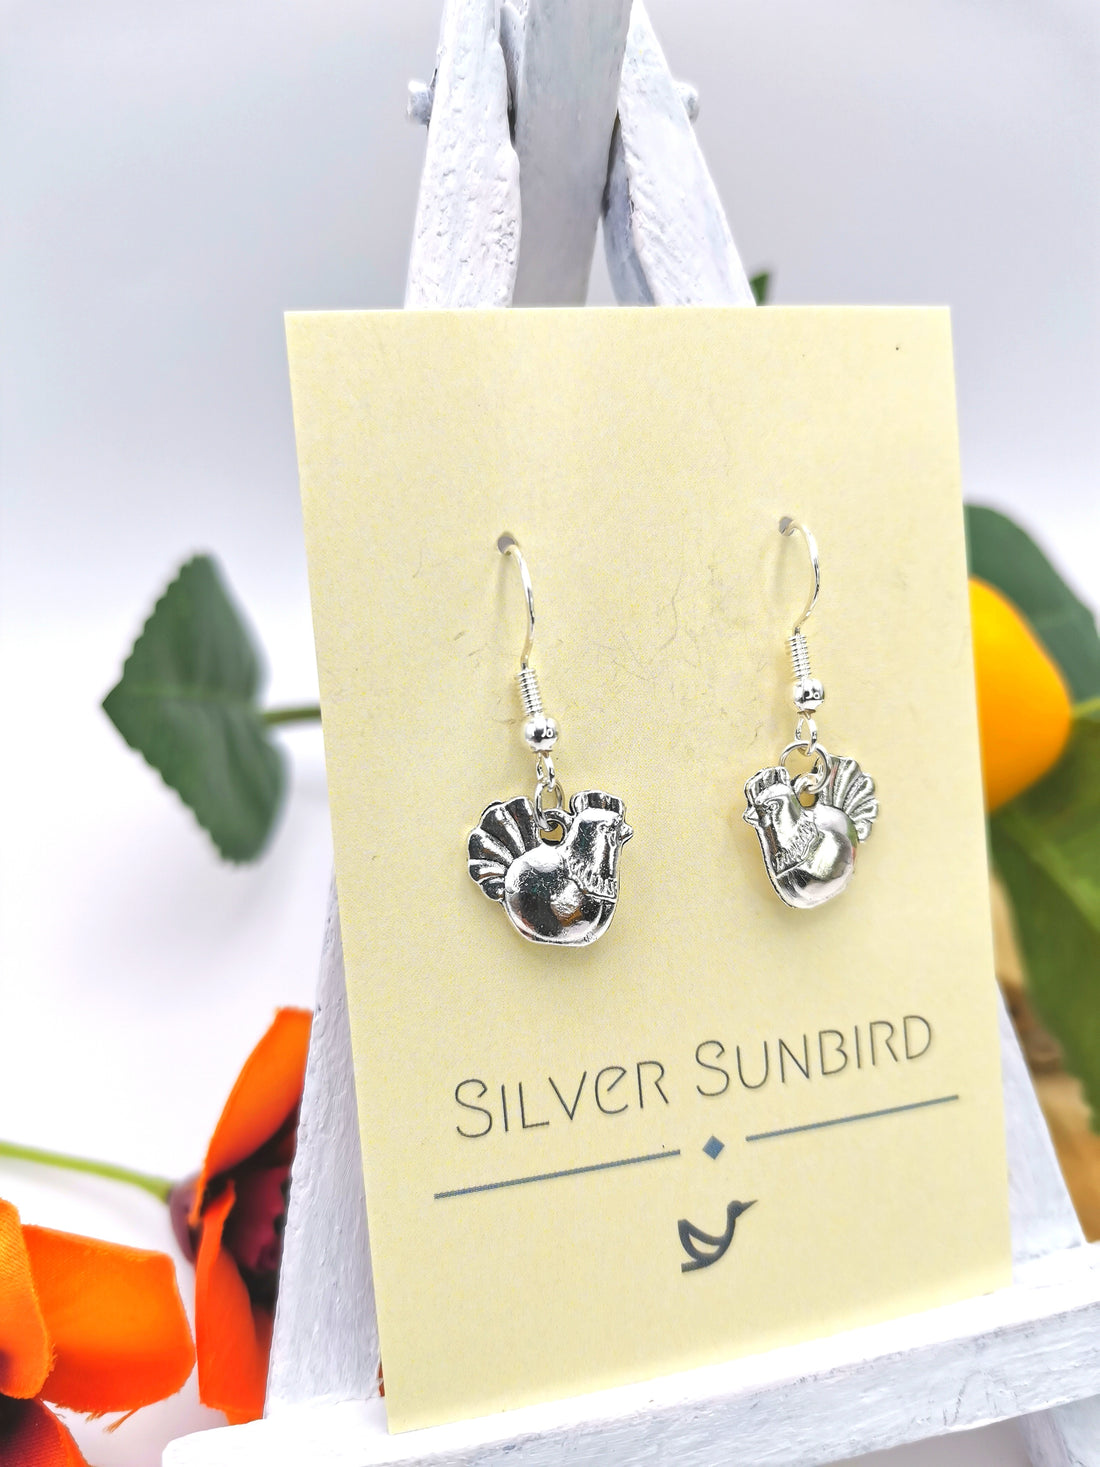 Charismatic Chicken Earrings - Silver Sunbird animal earrings